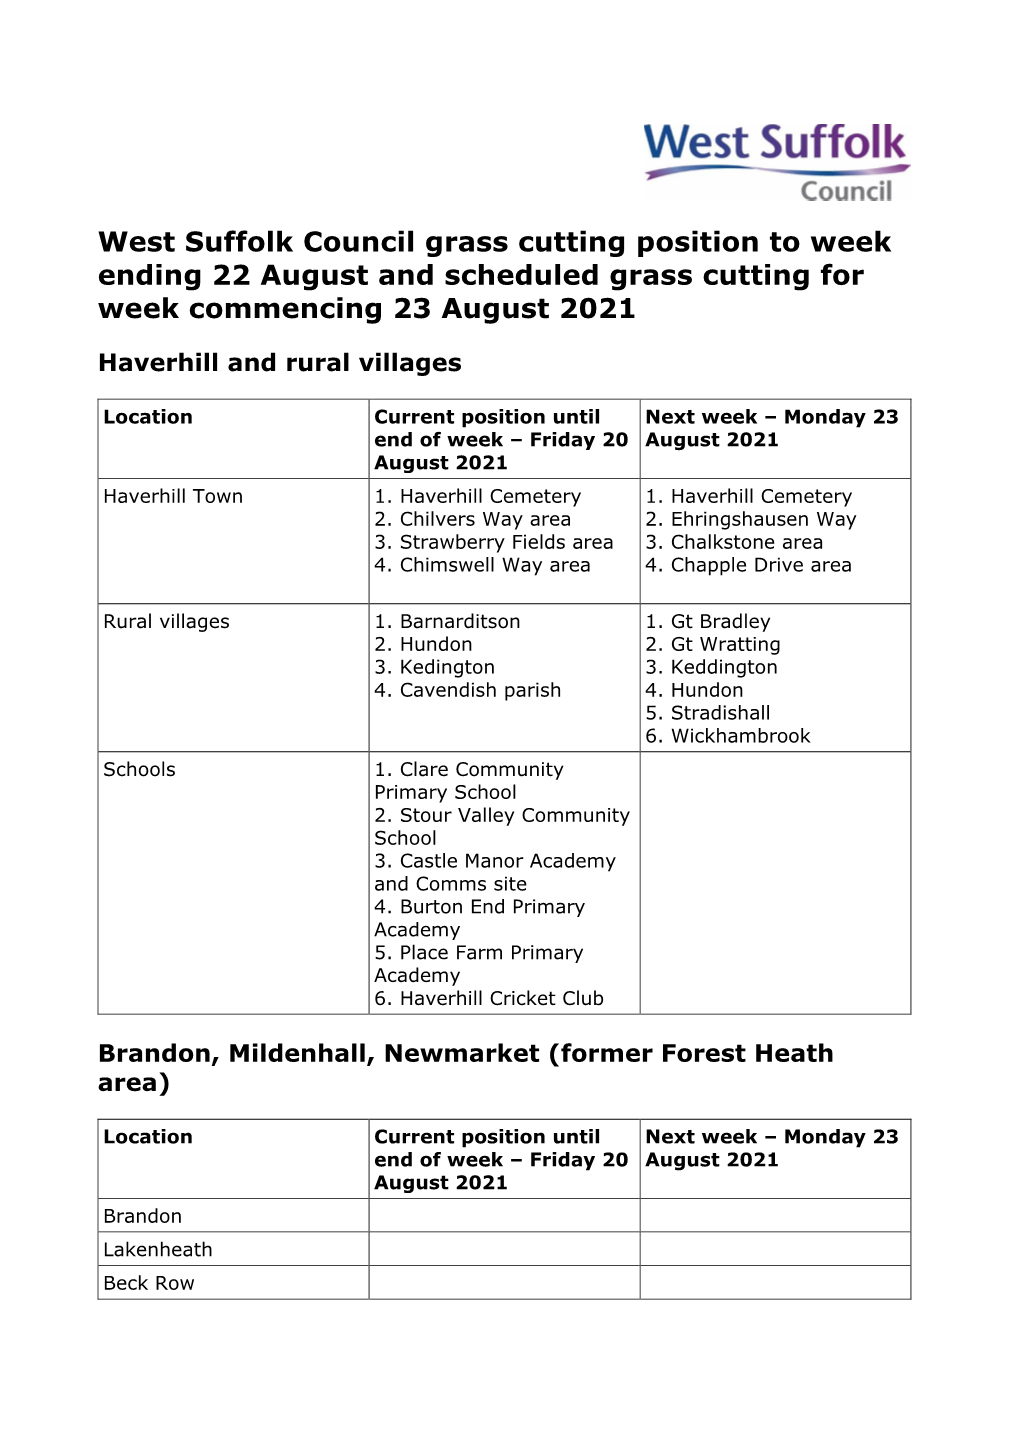 West Suffolk Council Grass Cutting Position Week Ending 22 August